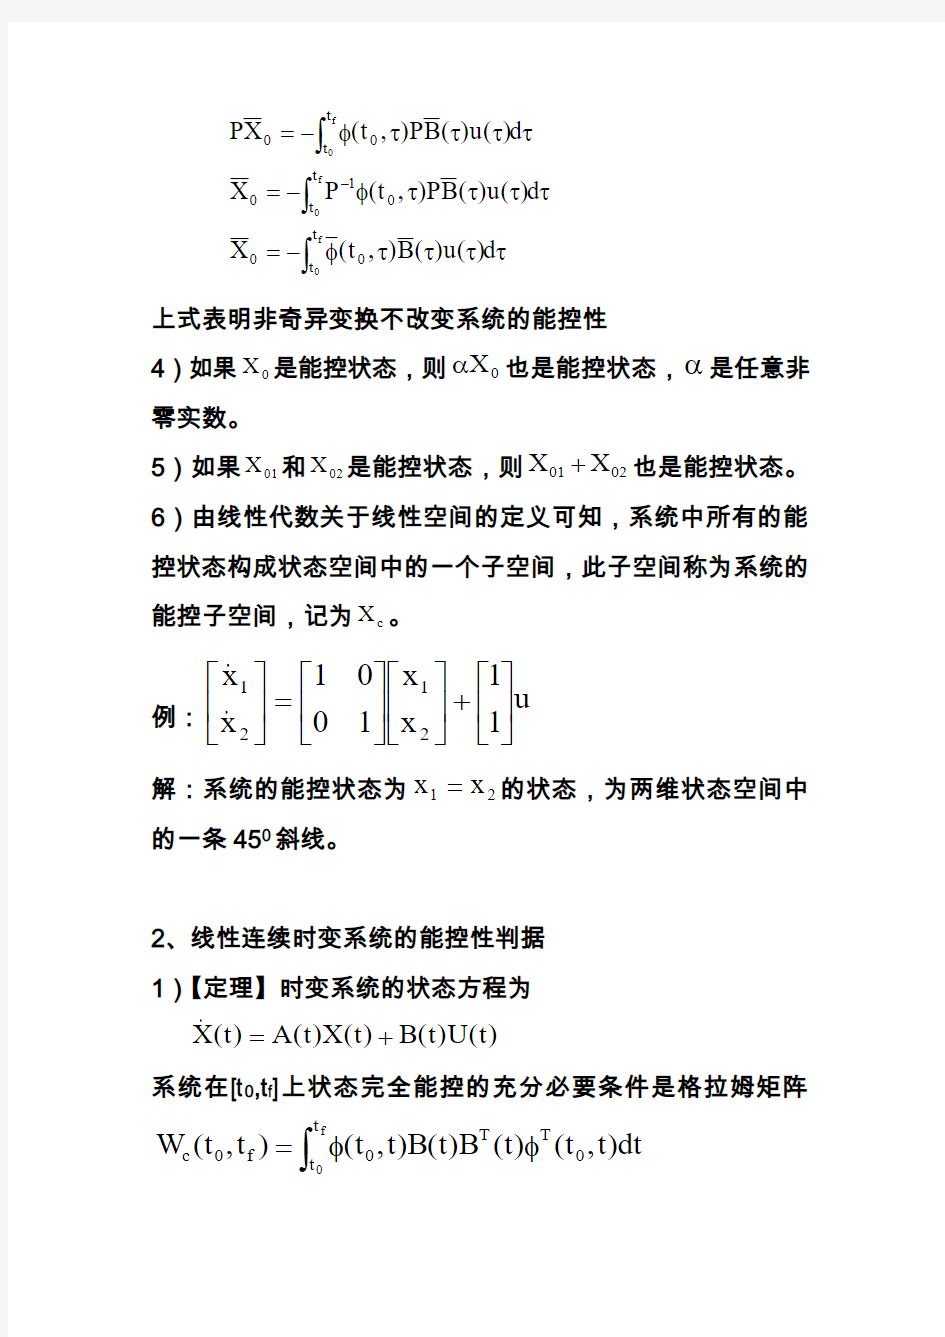 上海交大杜秀华老师《现代控制理论》第四章 线性系统的能控性和能观性4